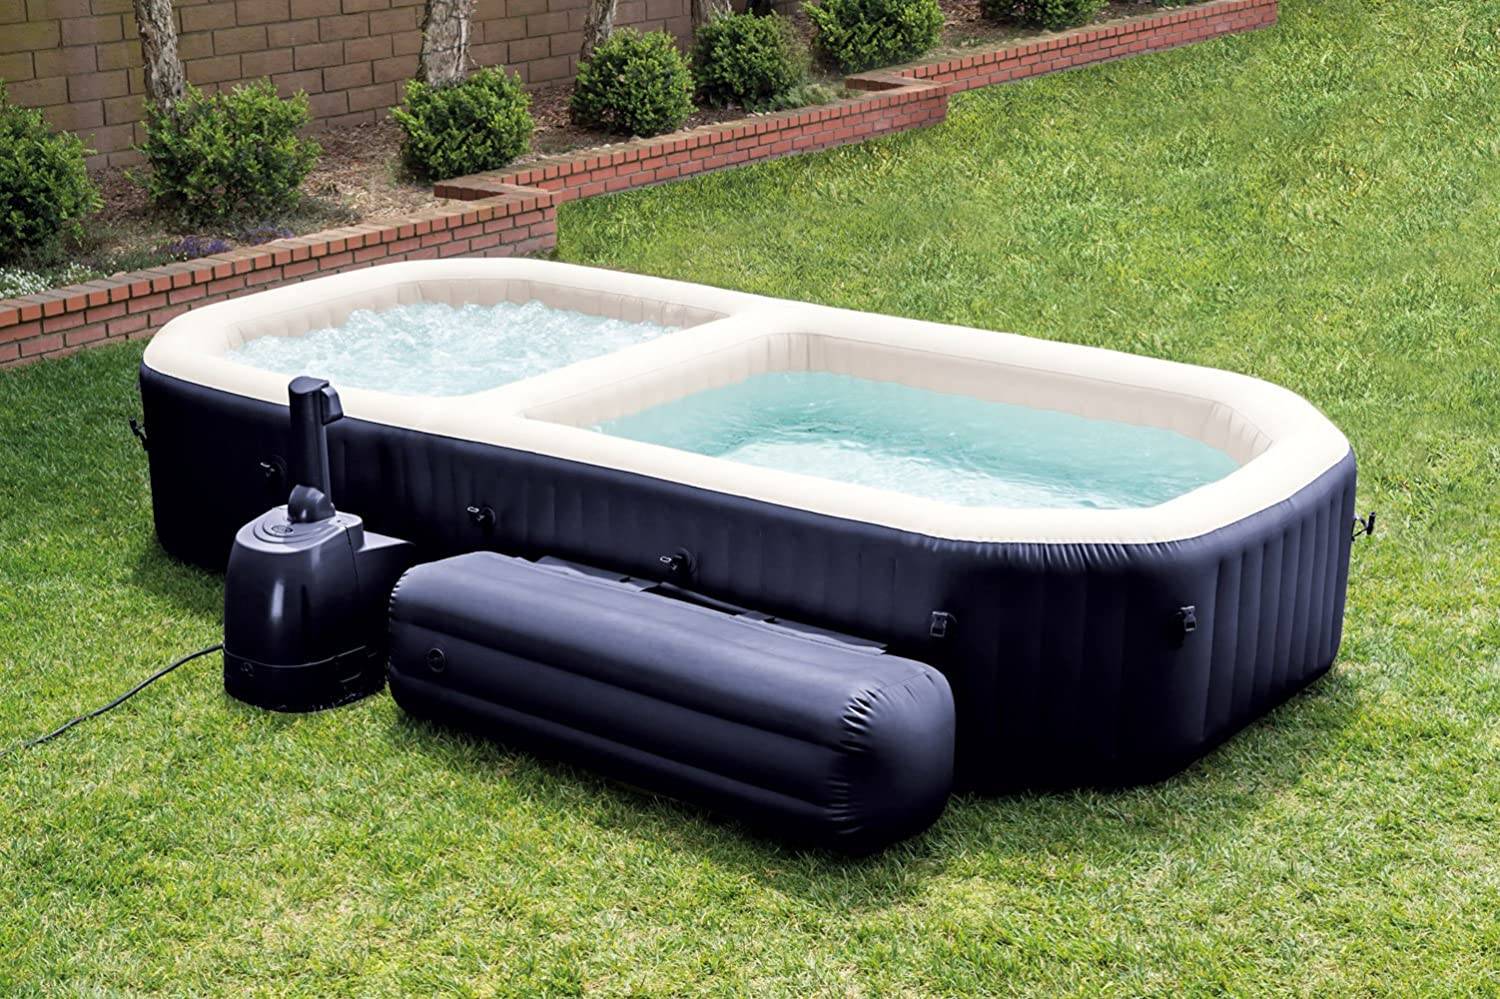 Лучшие модели спа бассейнов со всеми достоинствами и недостатками.